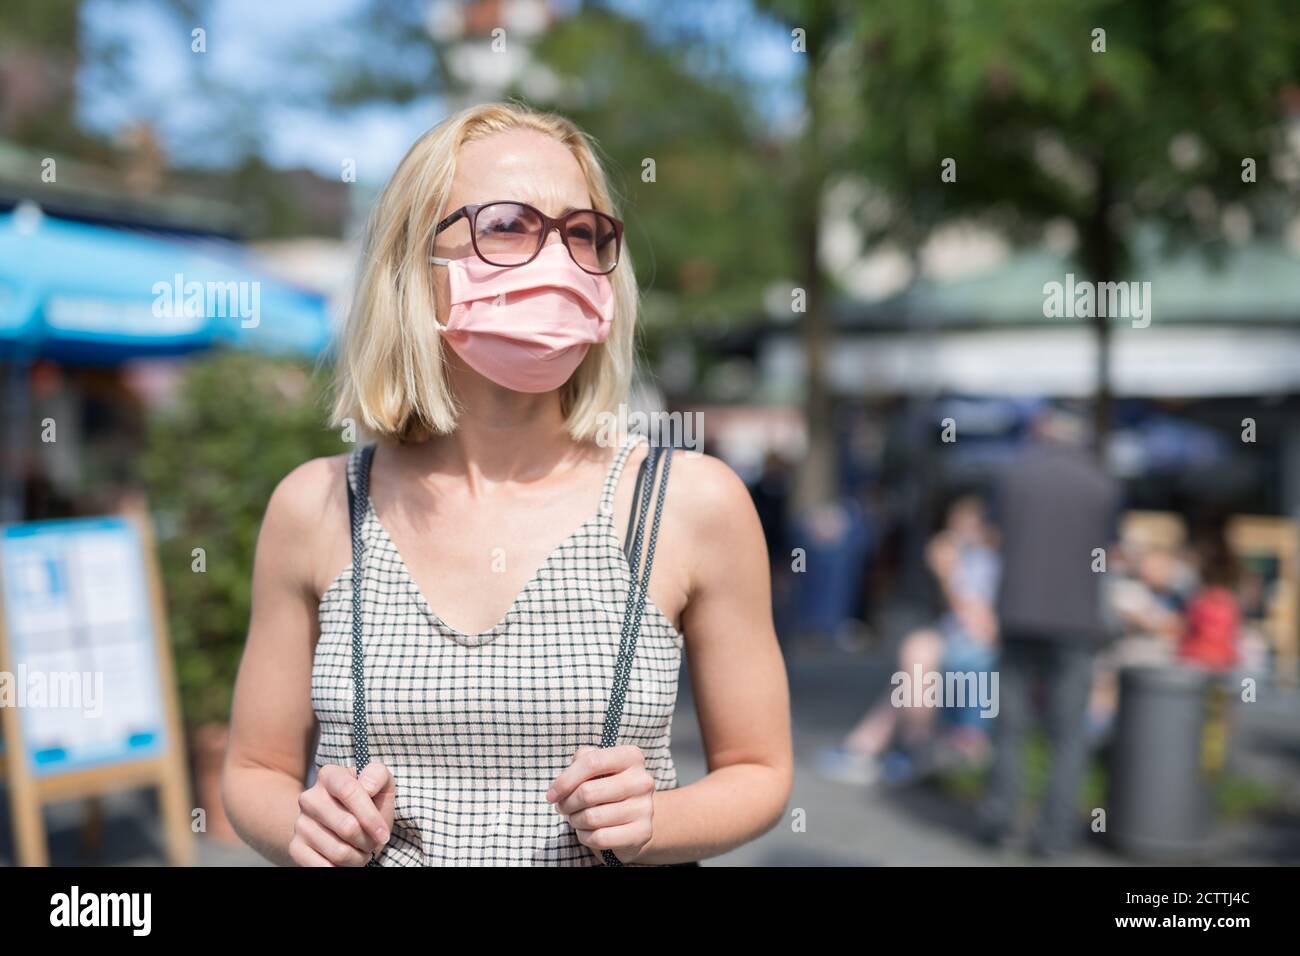 Portrait d'une jeune femme qui marche dans la rue et qui porte un masque de protection contre le virus Covid-19. Personnes fortuites en arrière-plan Banque D'Images